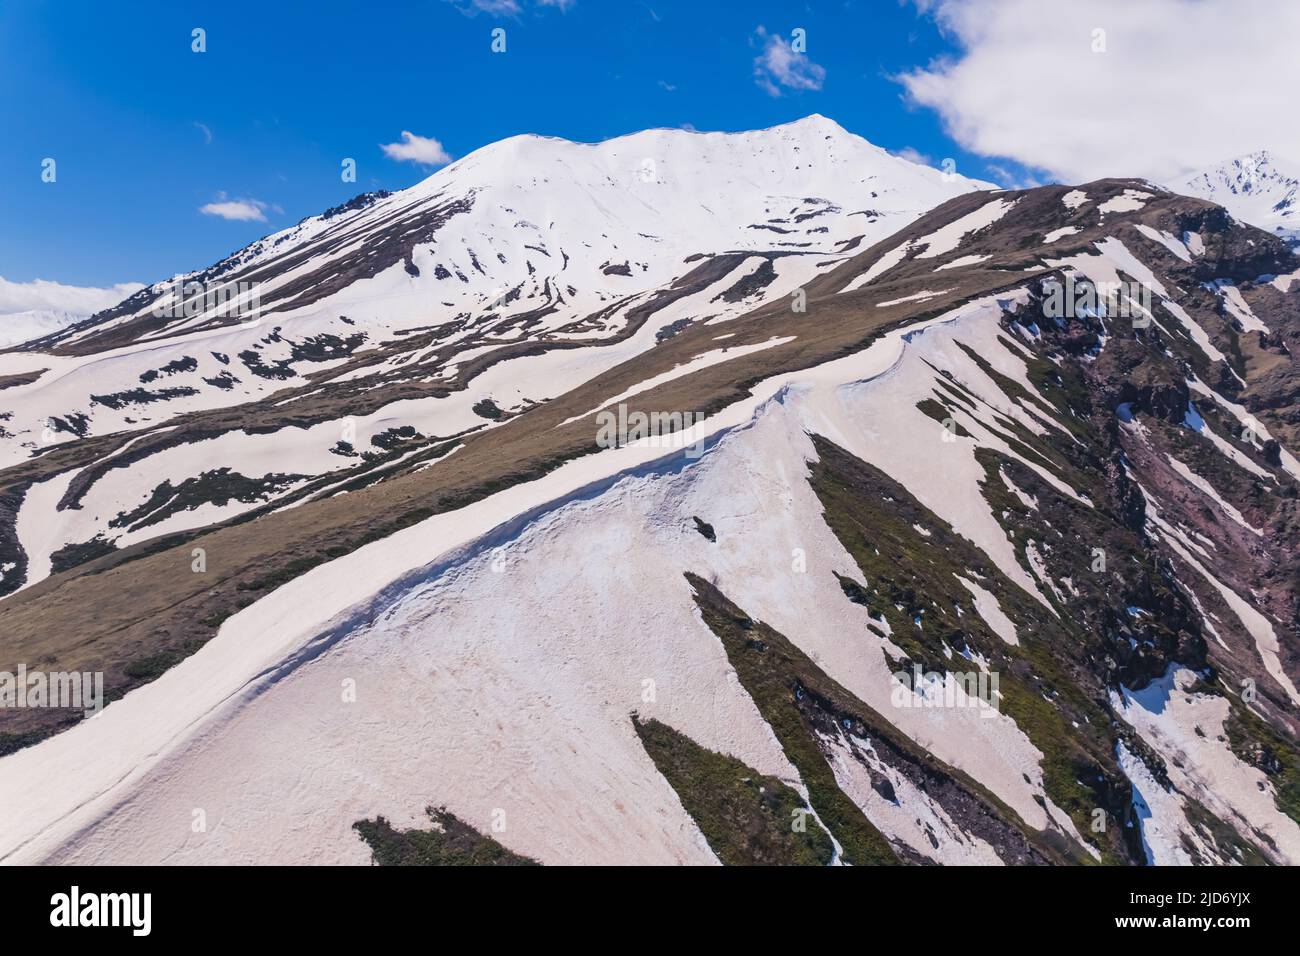 closeup view of a snowcapped mountain, Kazbegi, Georgia. High quality photo Stock Photo